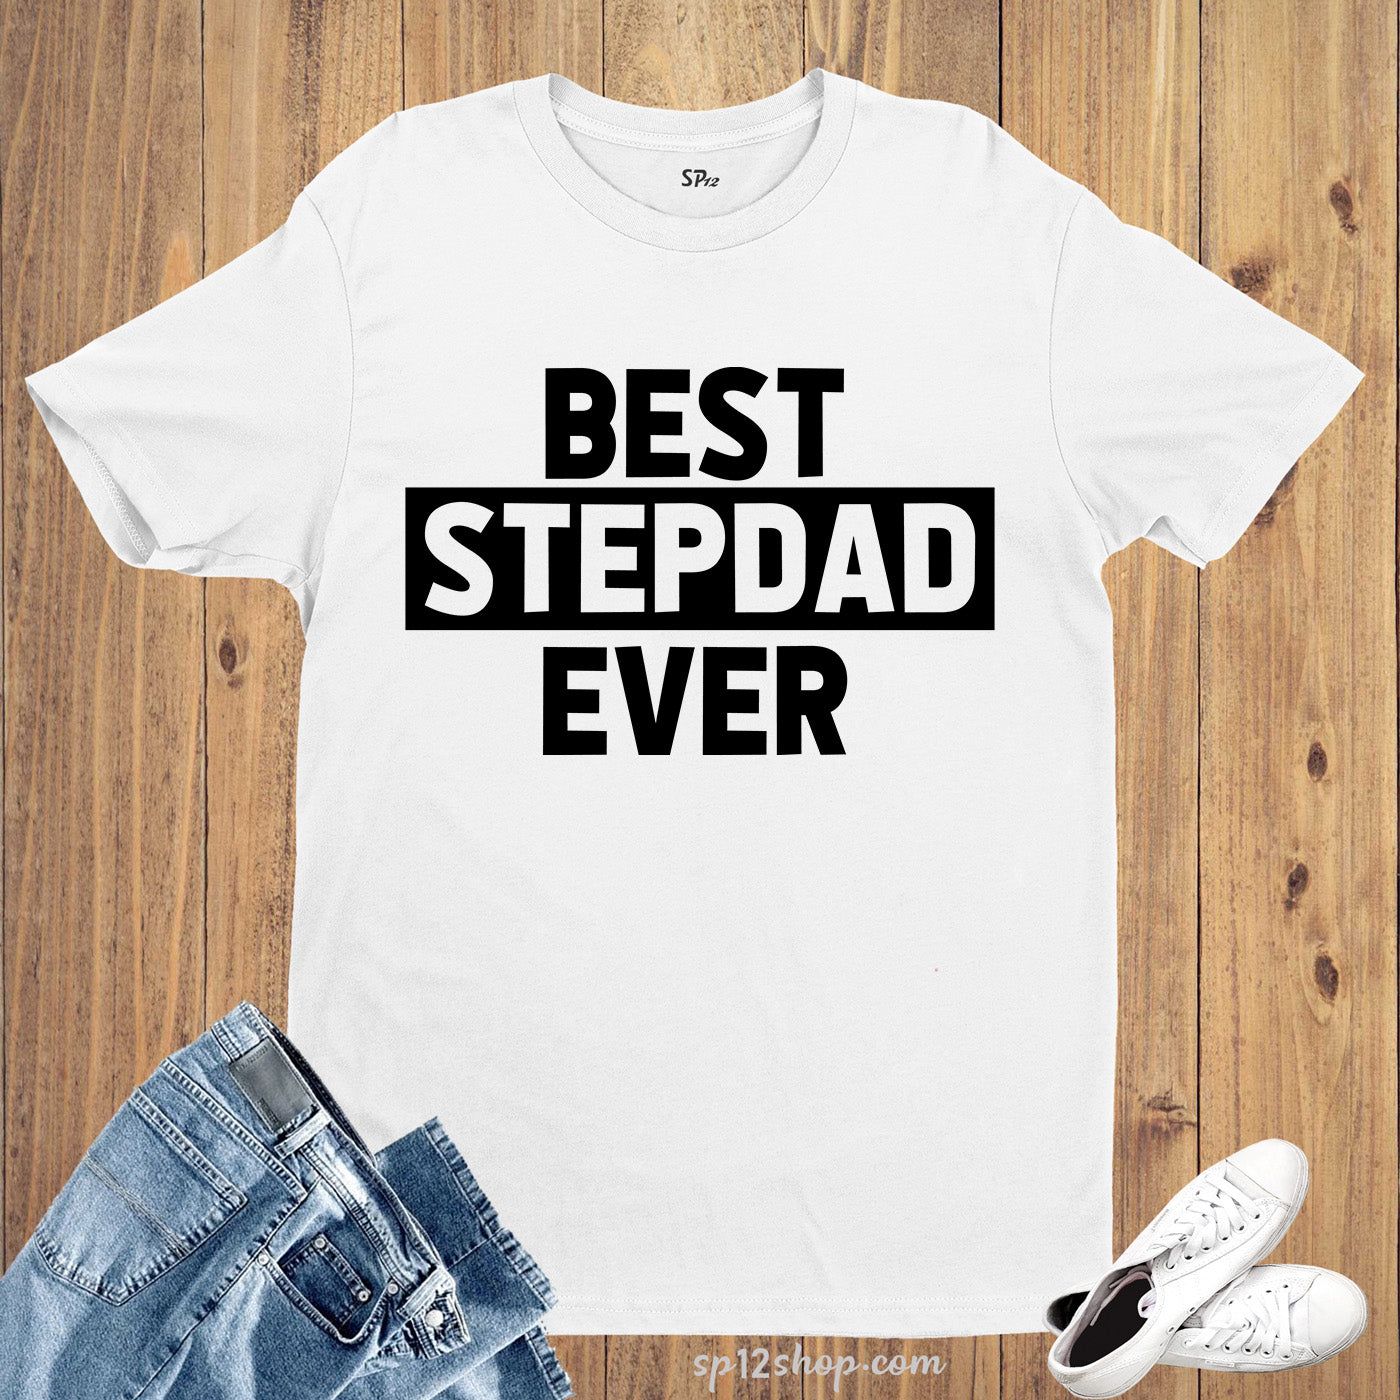 Best Stepdad Ever T Shirt